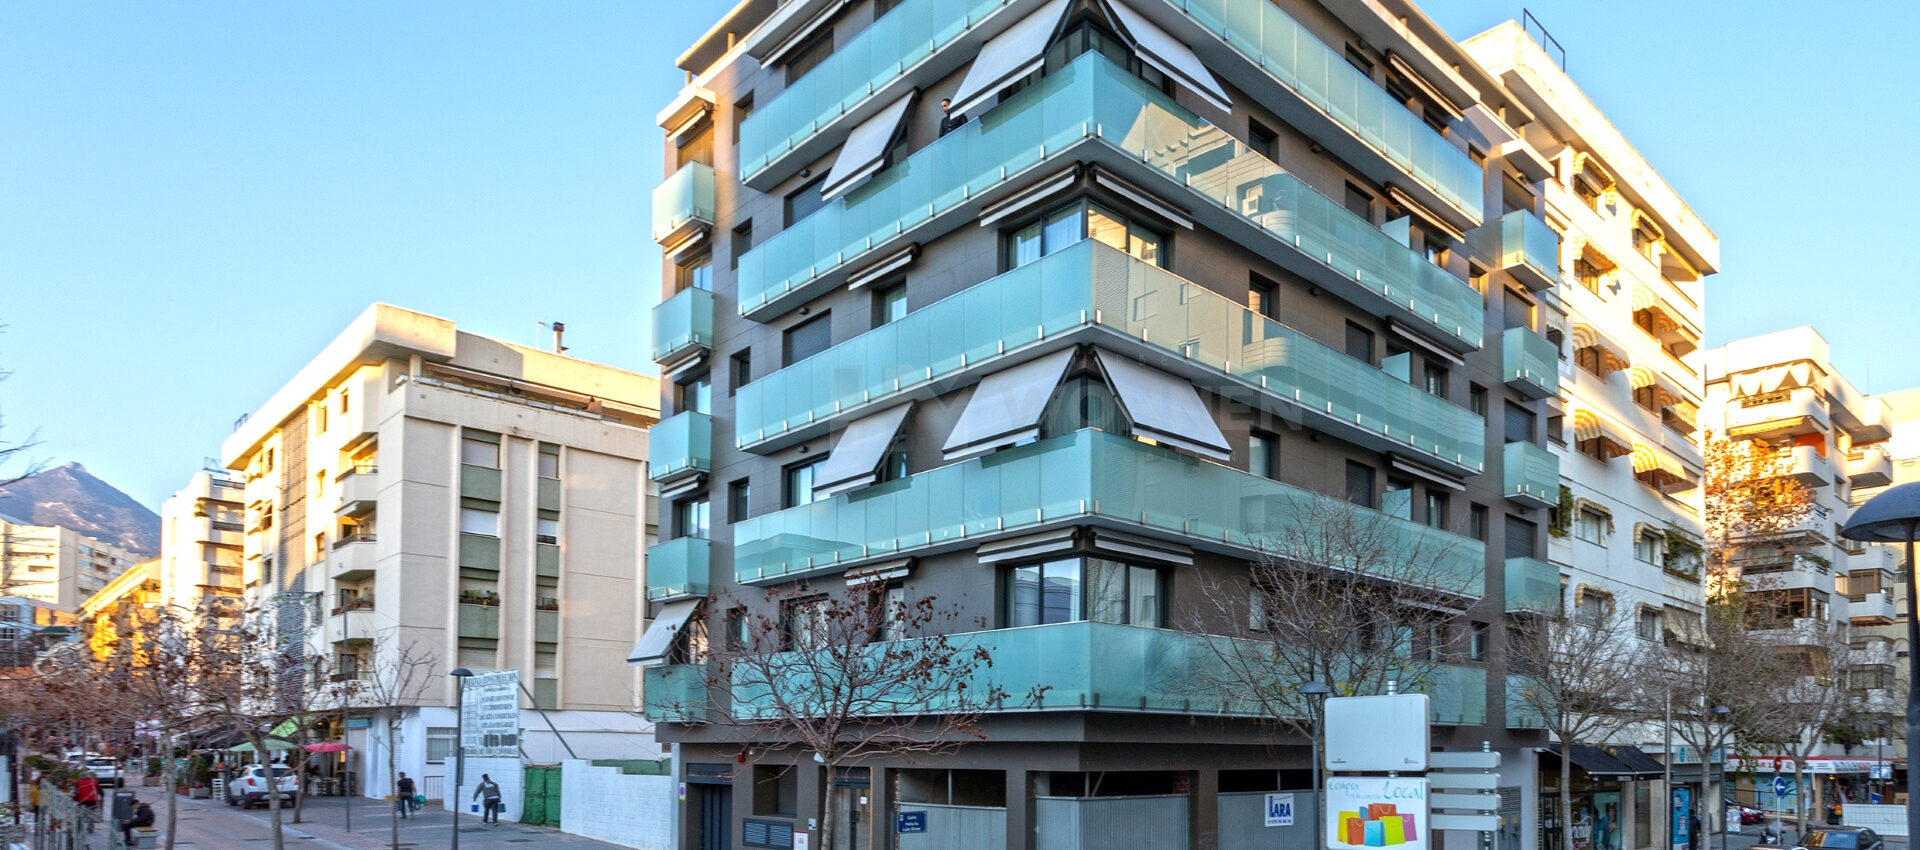 NEU gebaute Wohnung im Zentrum von Marbella einen Steinwurf vom Meer und der Altstadt entfernt